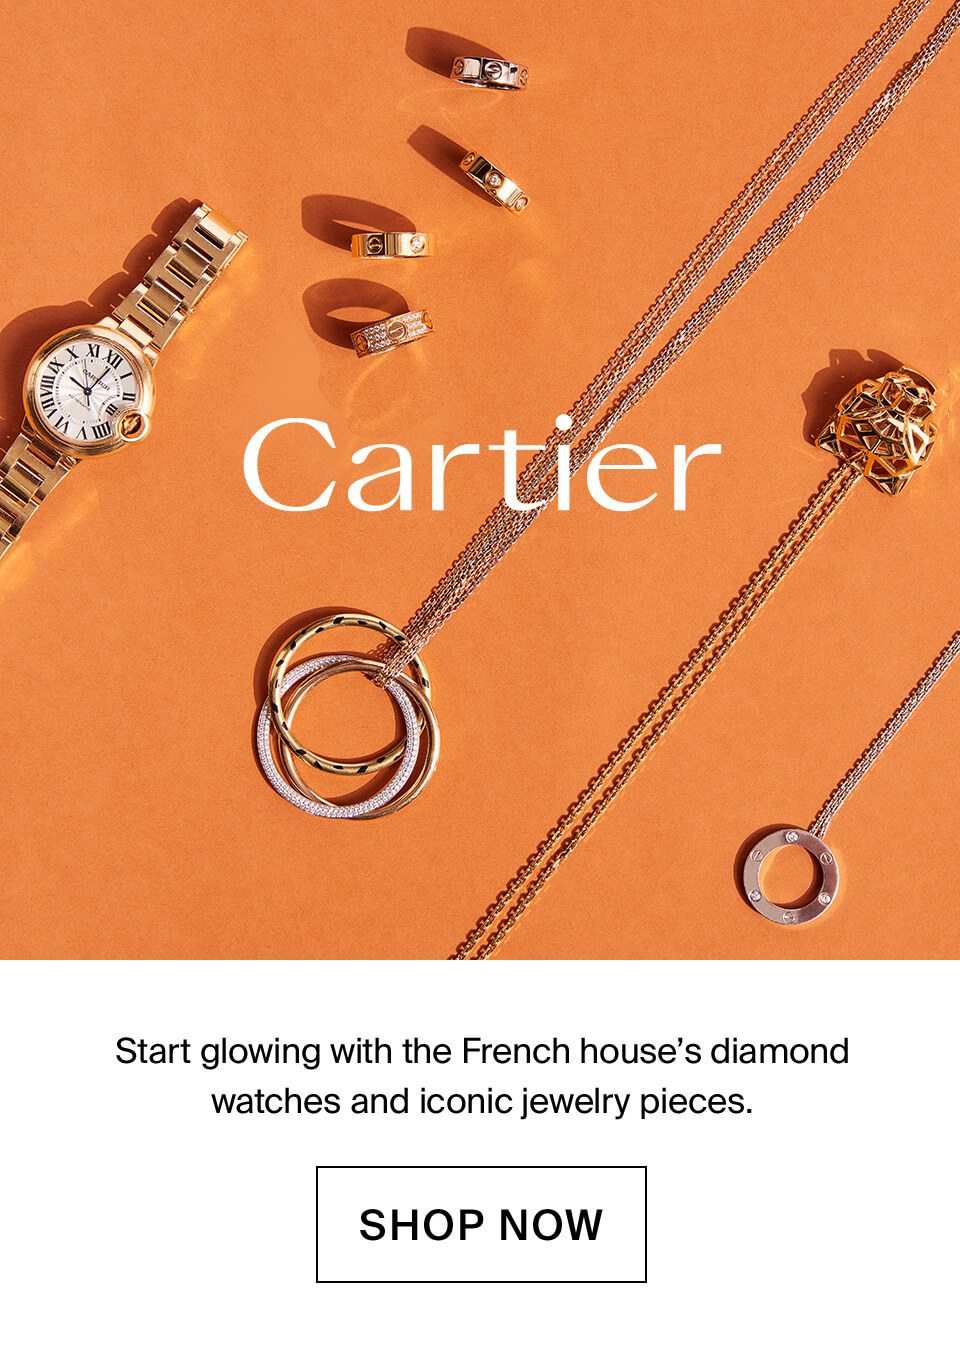 Cartier Shop Now